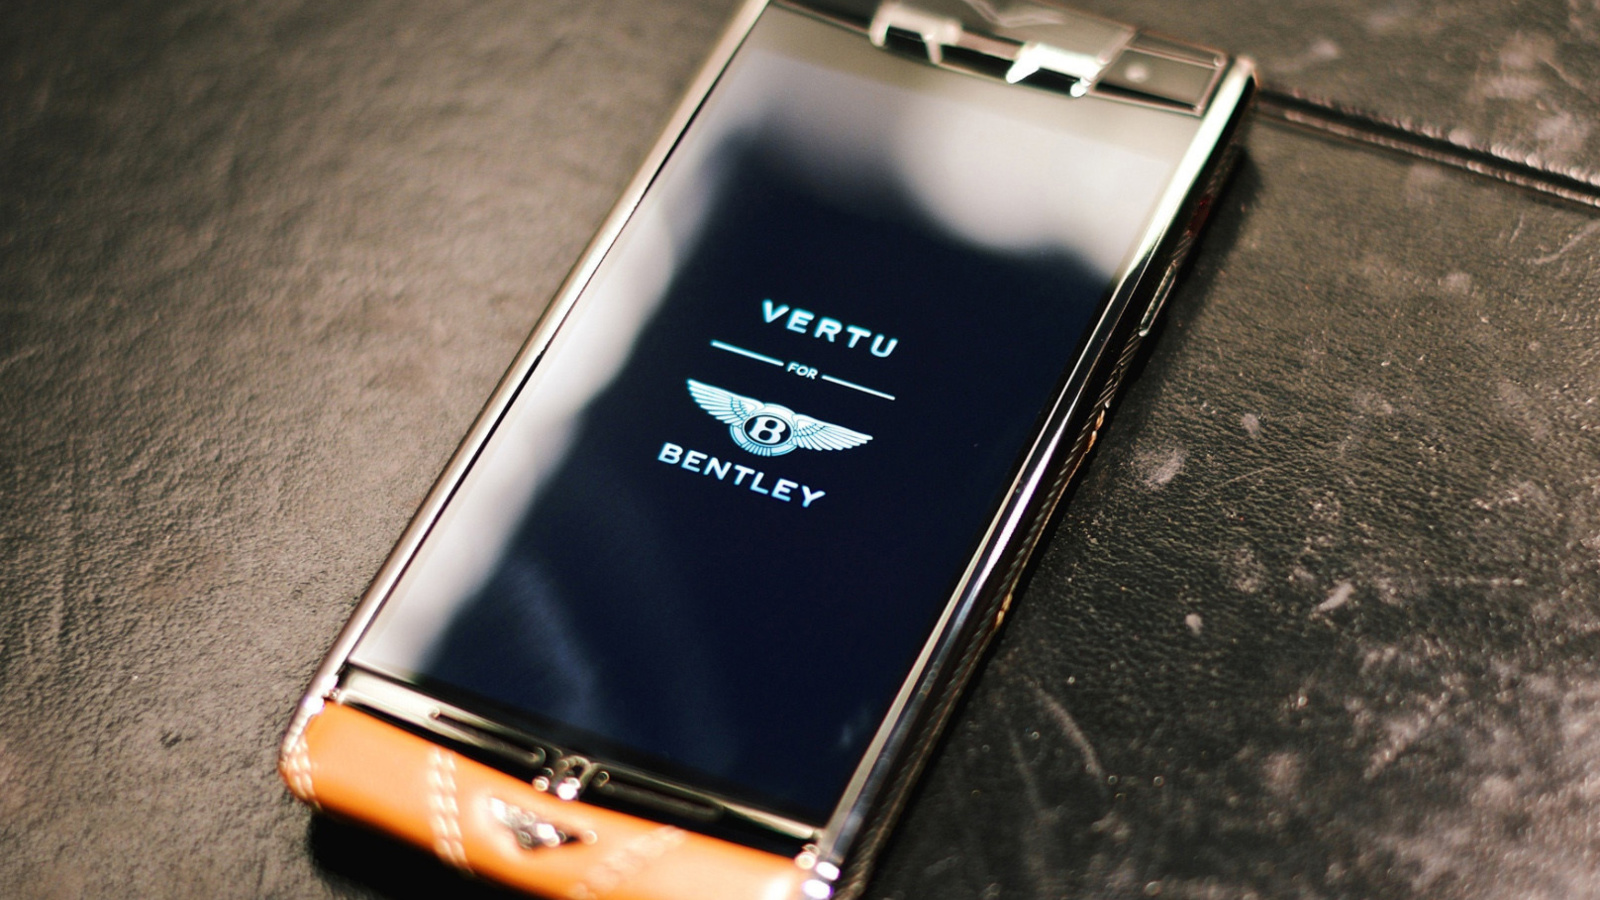 Vertu Bentley screenshot #1 1600x900